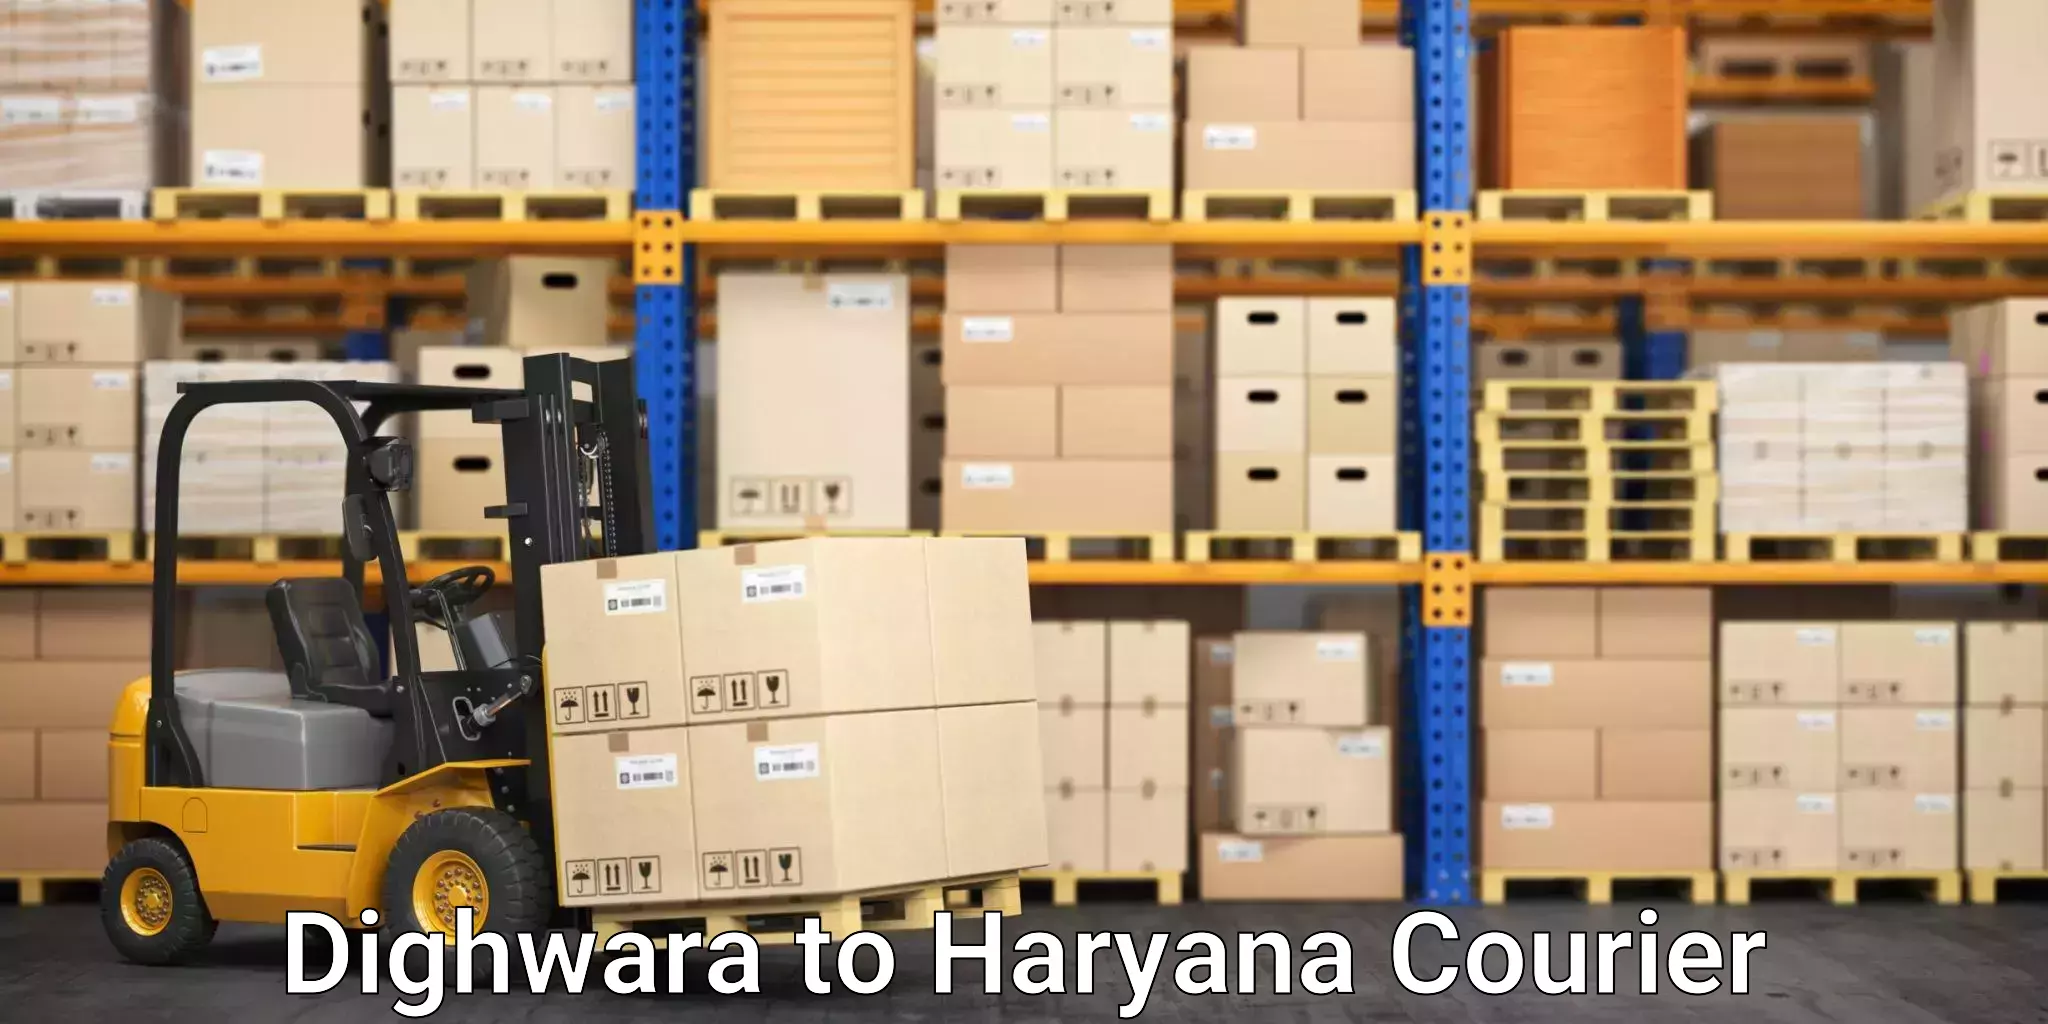 Furniture logistics Dighwara to NCR Haryana